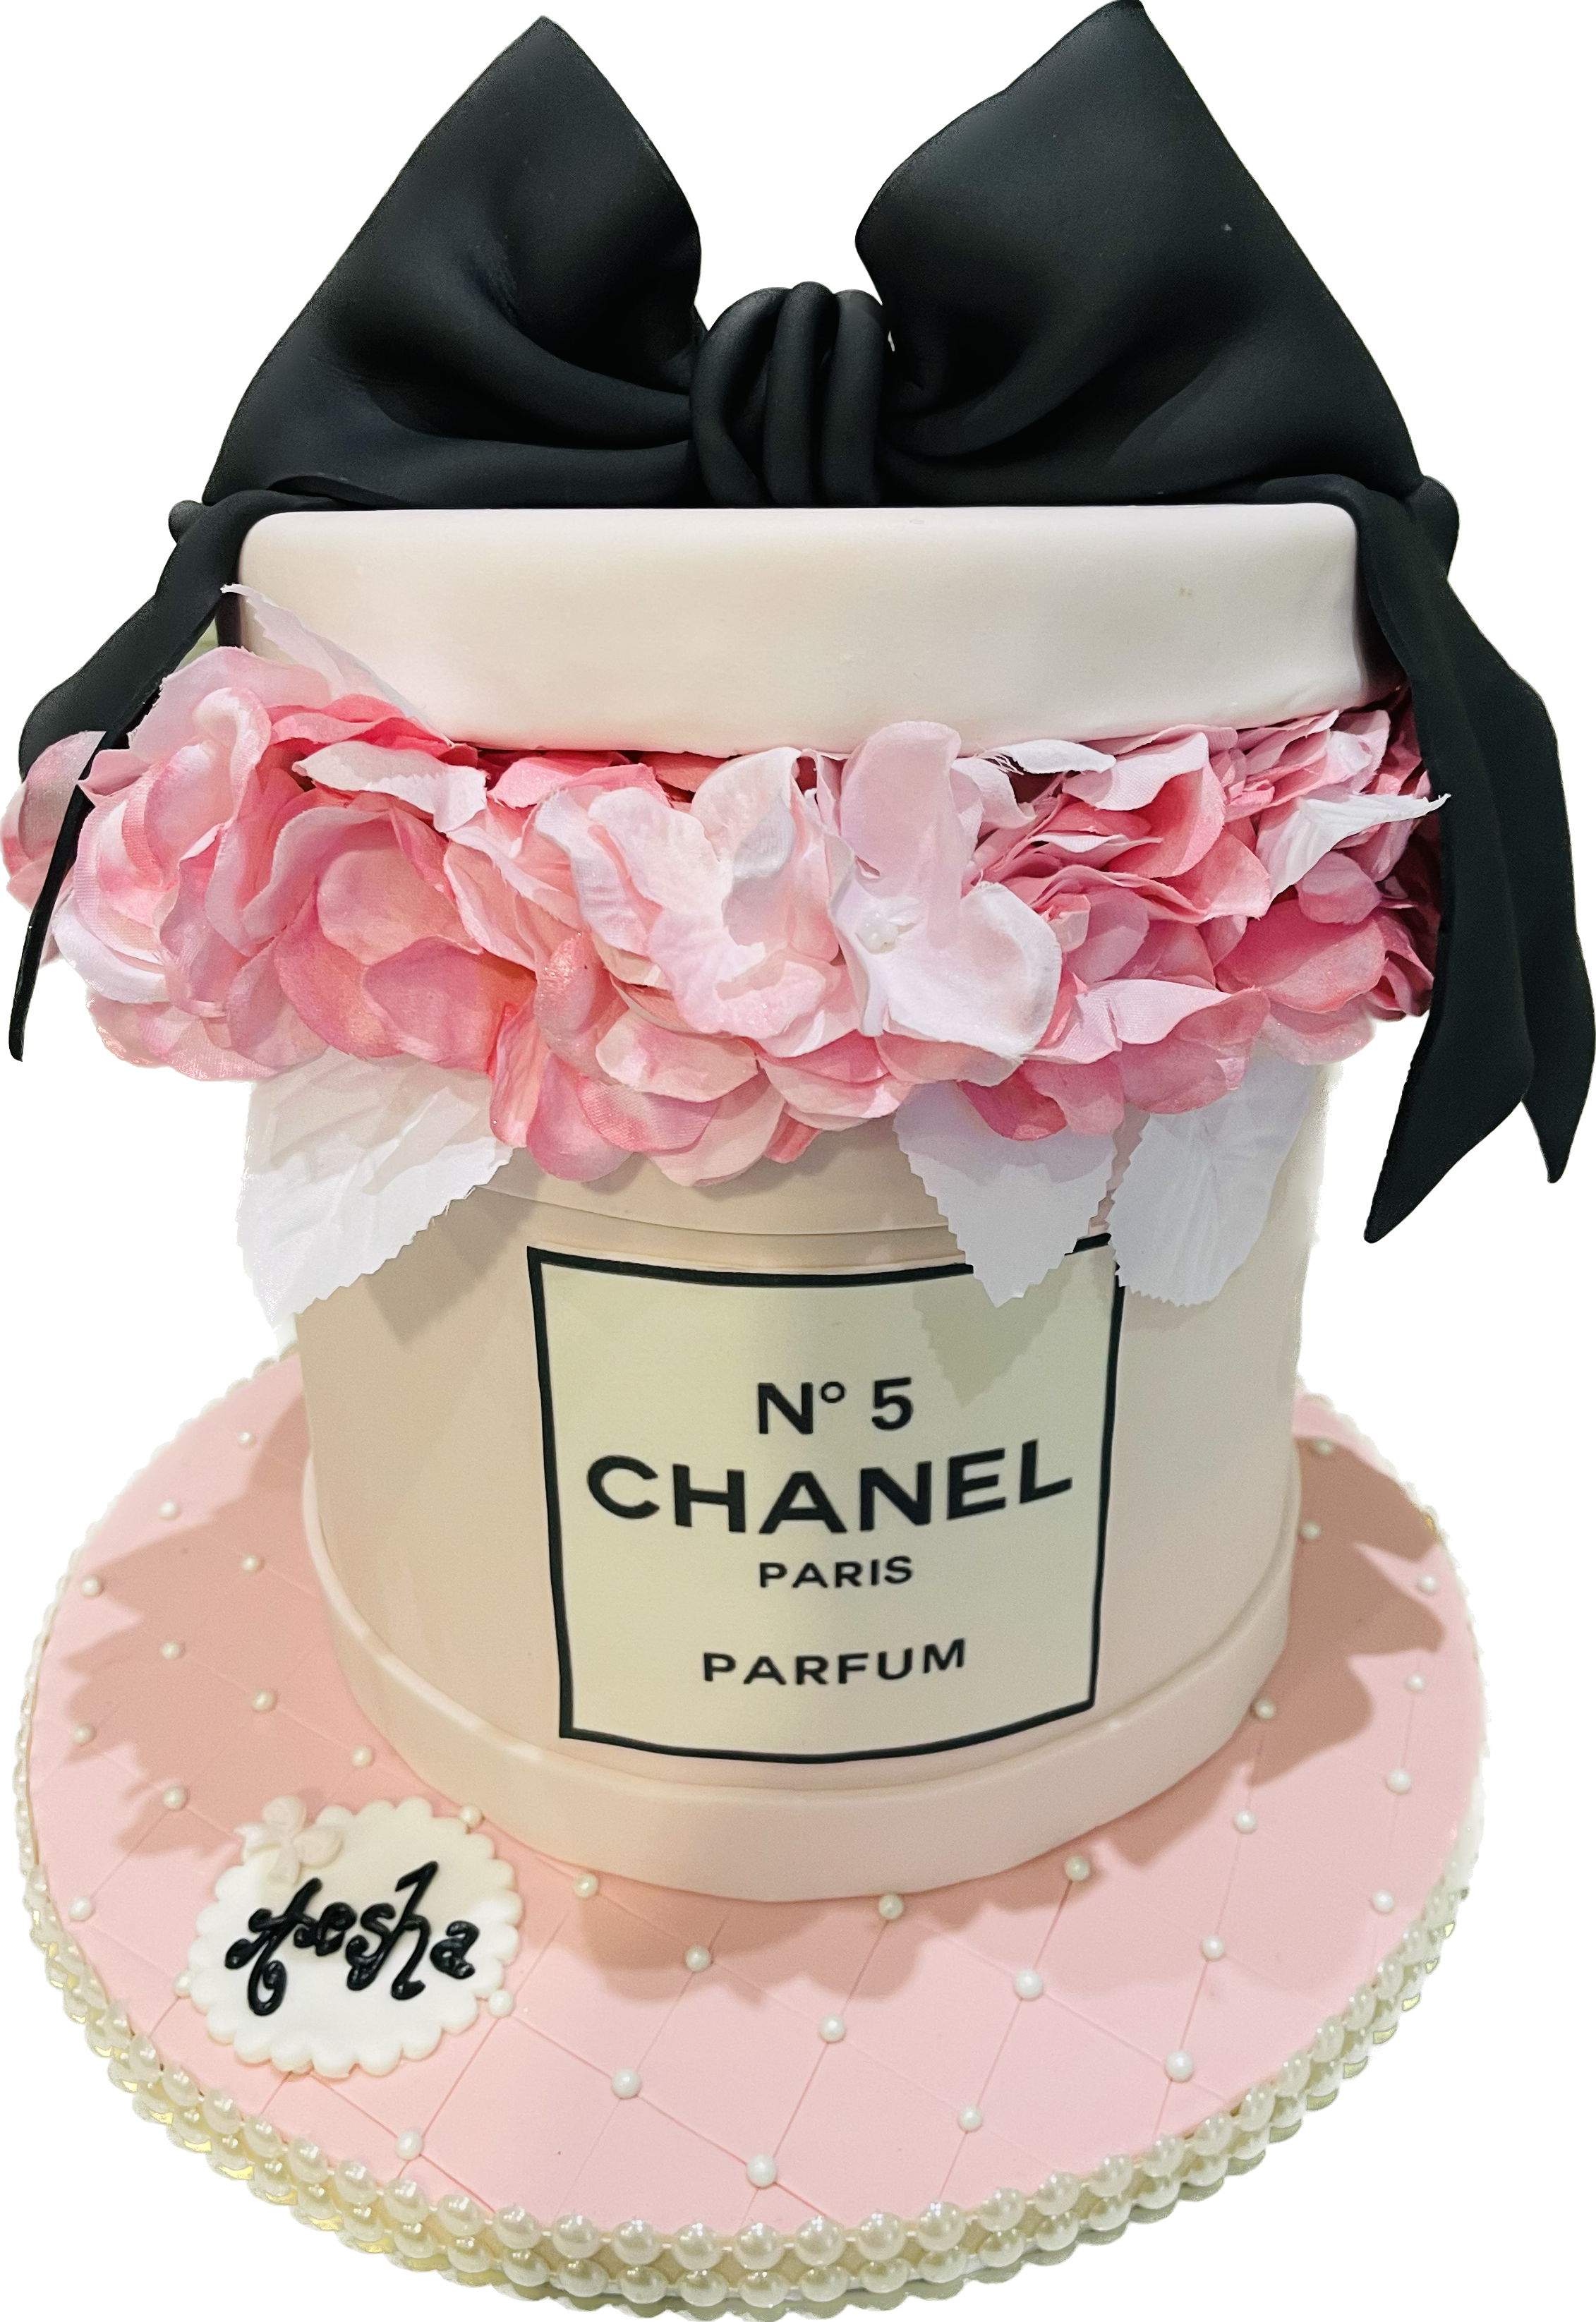 How to Make a Chanel No 5 Cake. Como Hacer un Pastel Chanel No 5 con Rosas  Faciles sin cortador. 